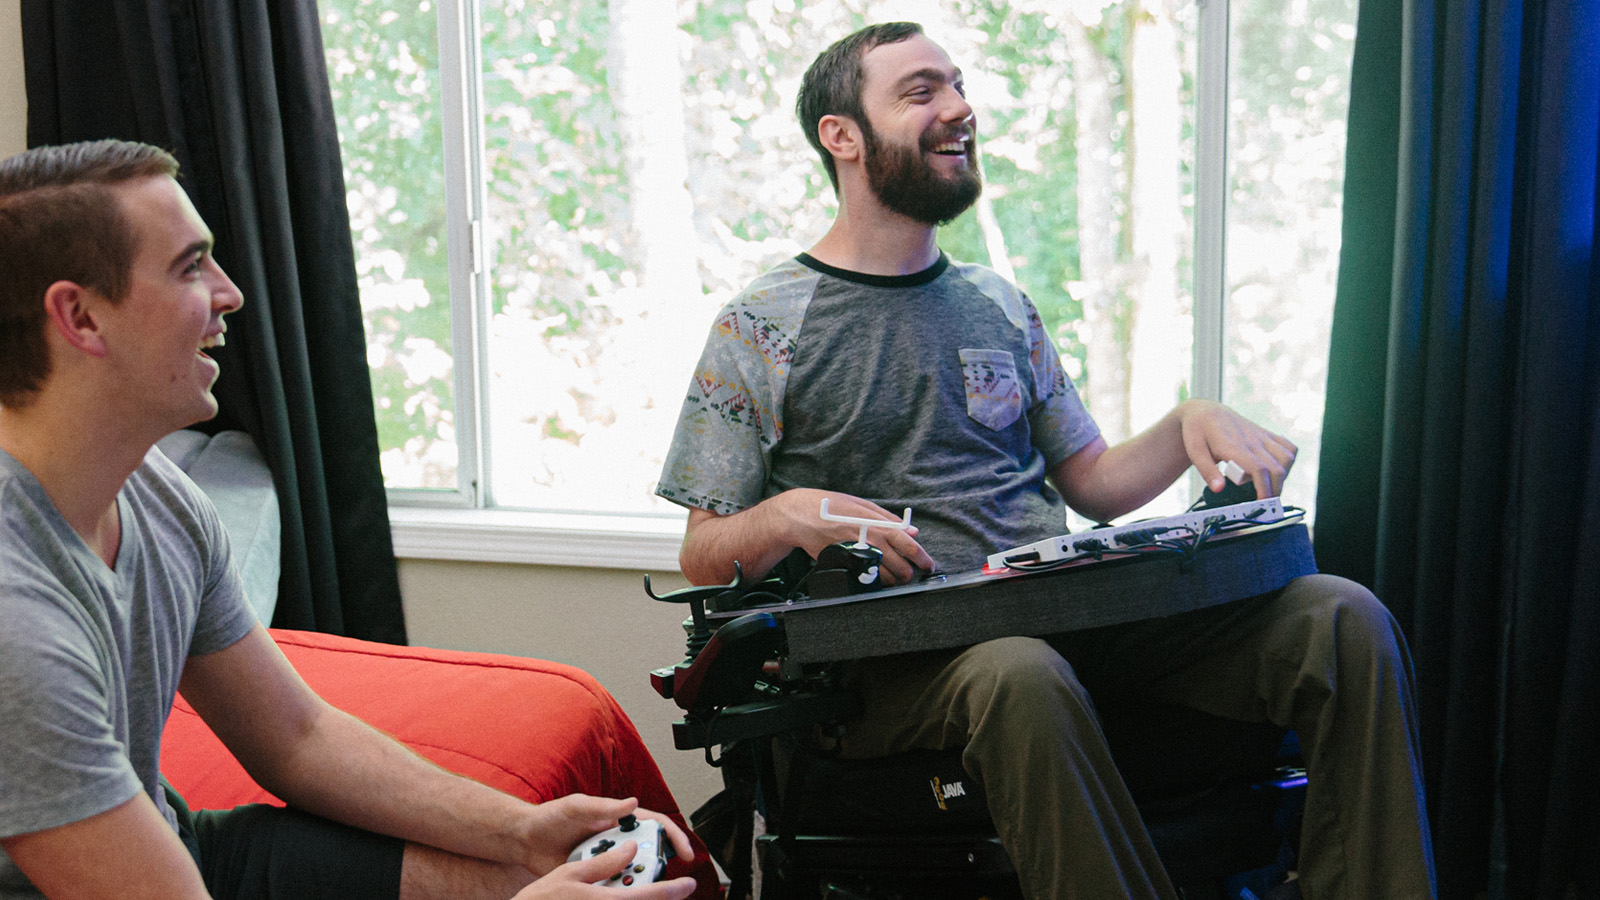 Spencer Allen bruger Xbox Adaptive Controller til at spille et spil med en ven.